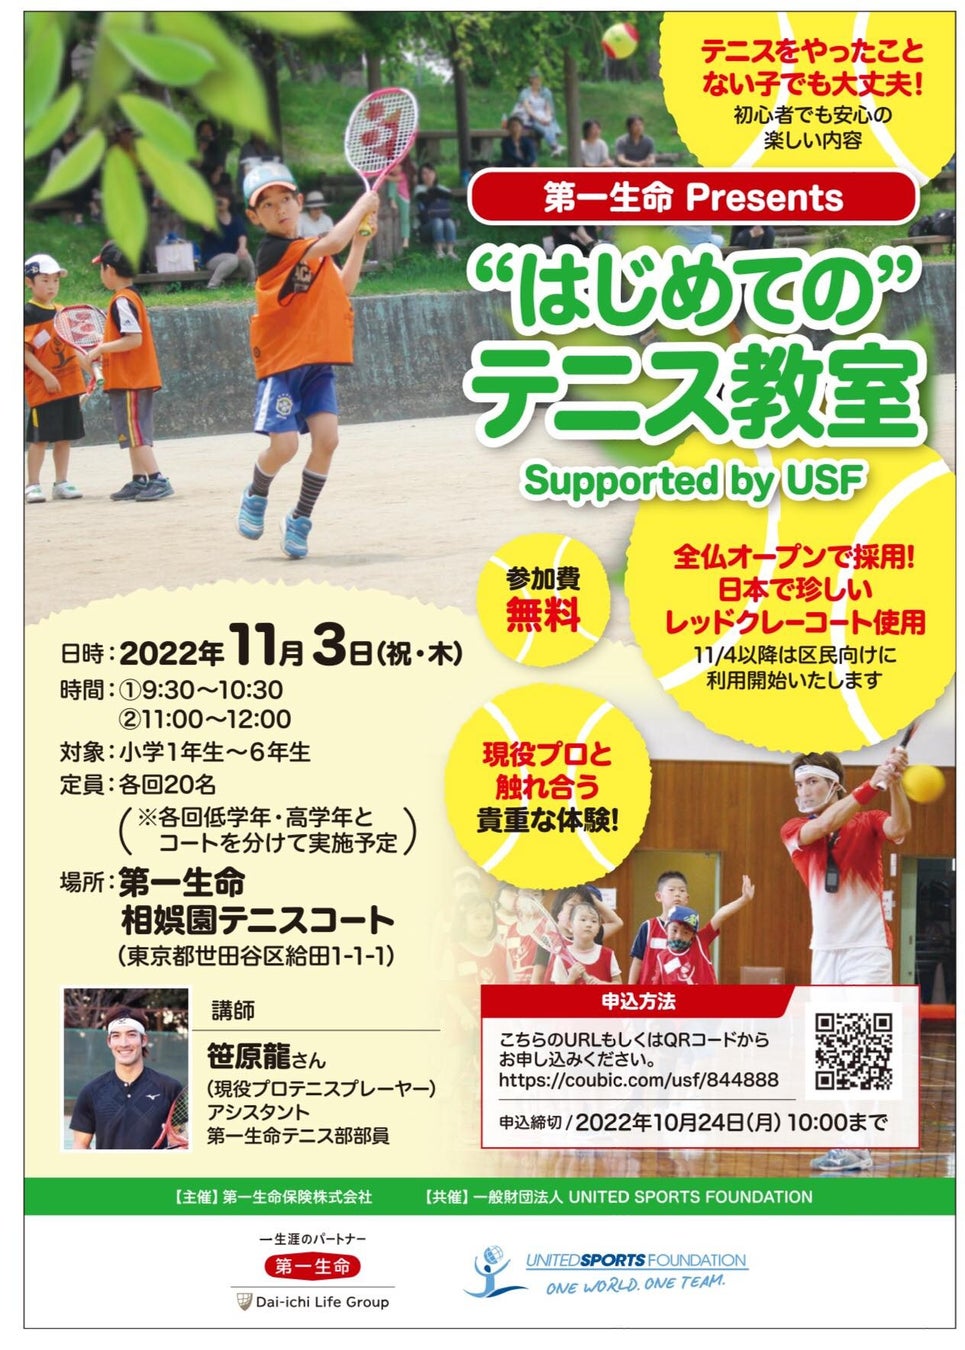 プロテニスプレイヤー笹原龍が、屋外型として日本初のレッドクレーコートで開催されるテニス教室の講師に就任！